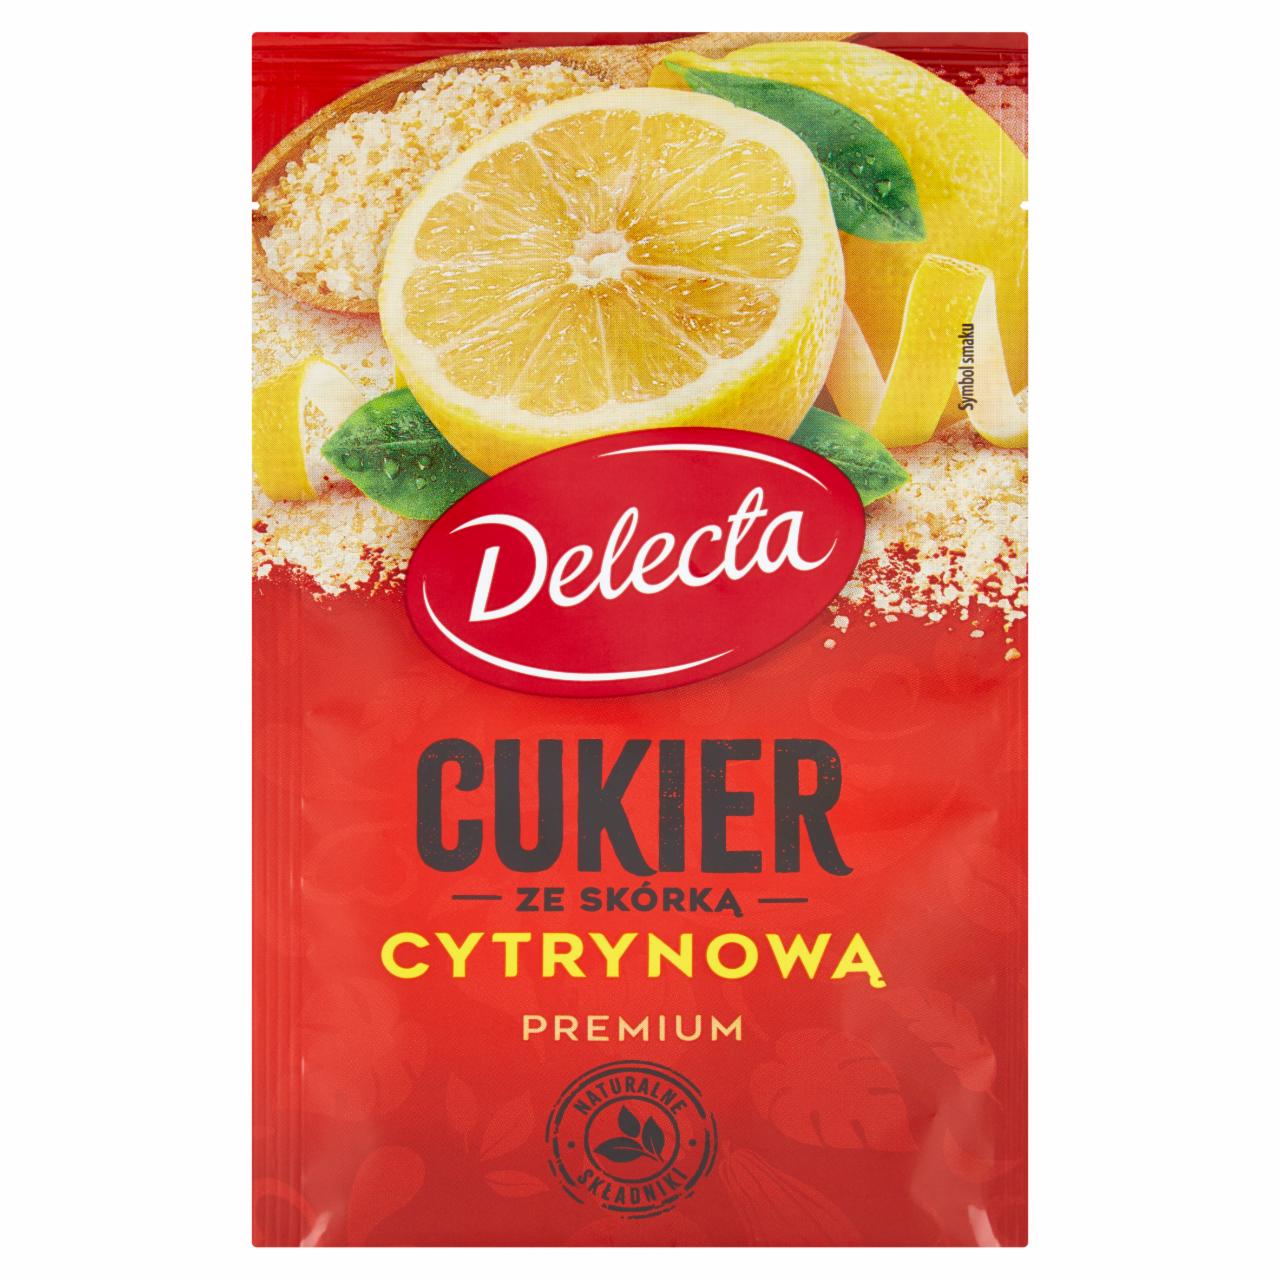 Zdjęcia - Delecta Premium Cukier ze skórką cytrynową 15 g